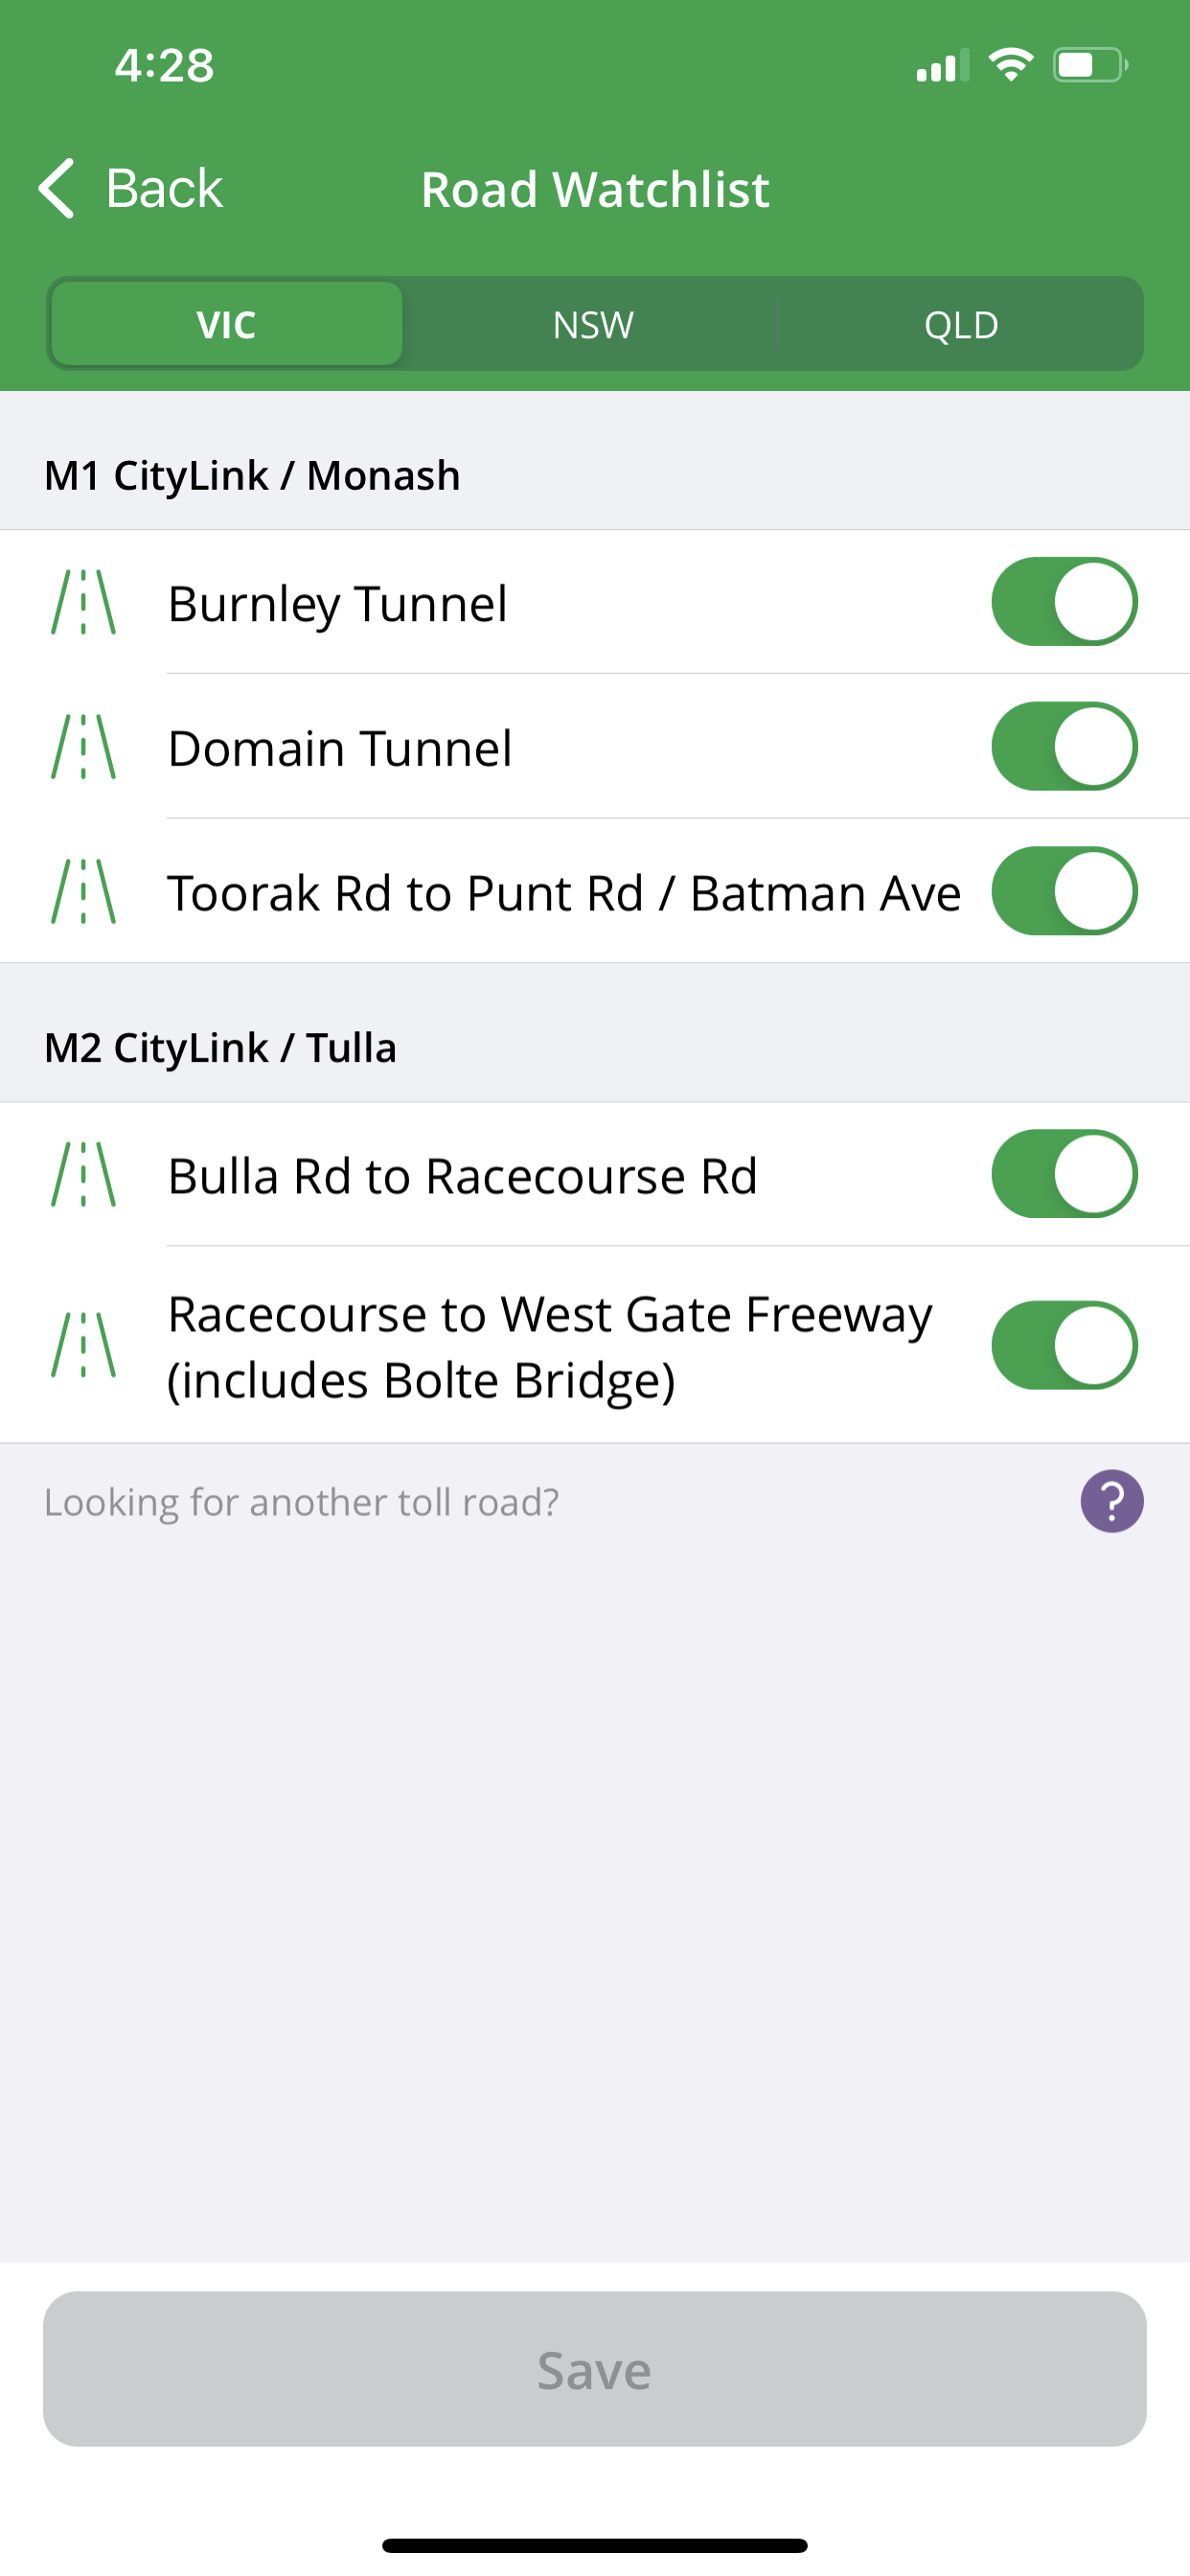 Roads watchlist screen on Linkt app